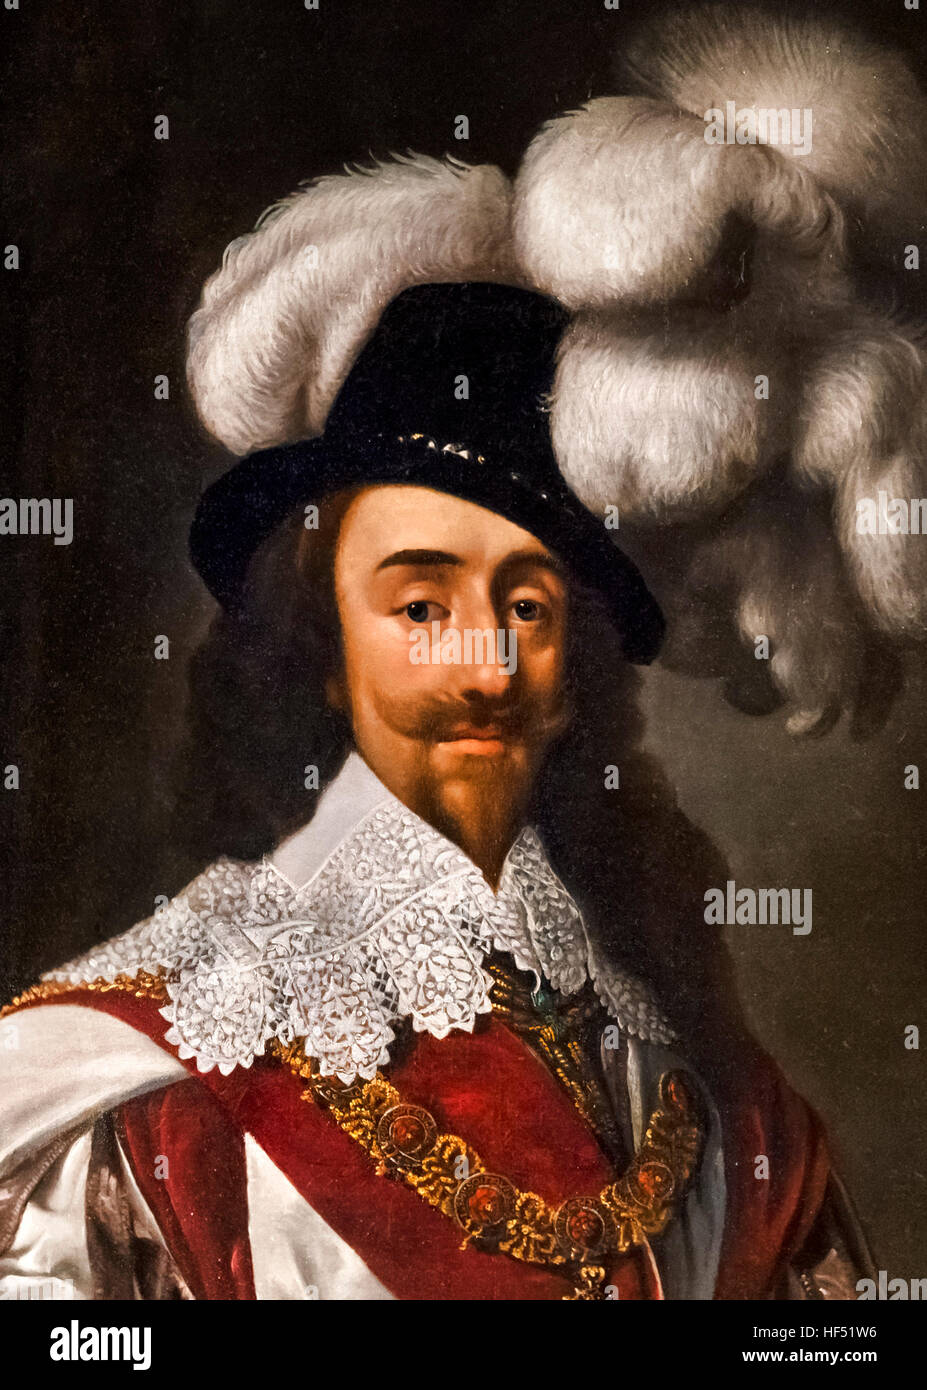 Charles I. retrato del rey Carlos I de Inglaterra, por Daniel Mytens el Starez, óleo sobre lienzo, 1633. Este es un detalle de una pintura de mayor tamaño, el HF51W5 Foto de stock